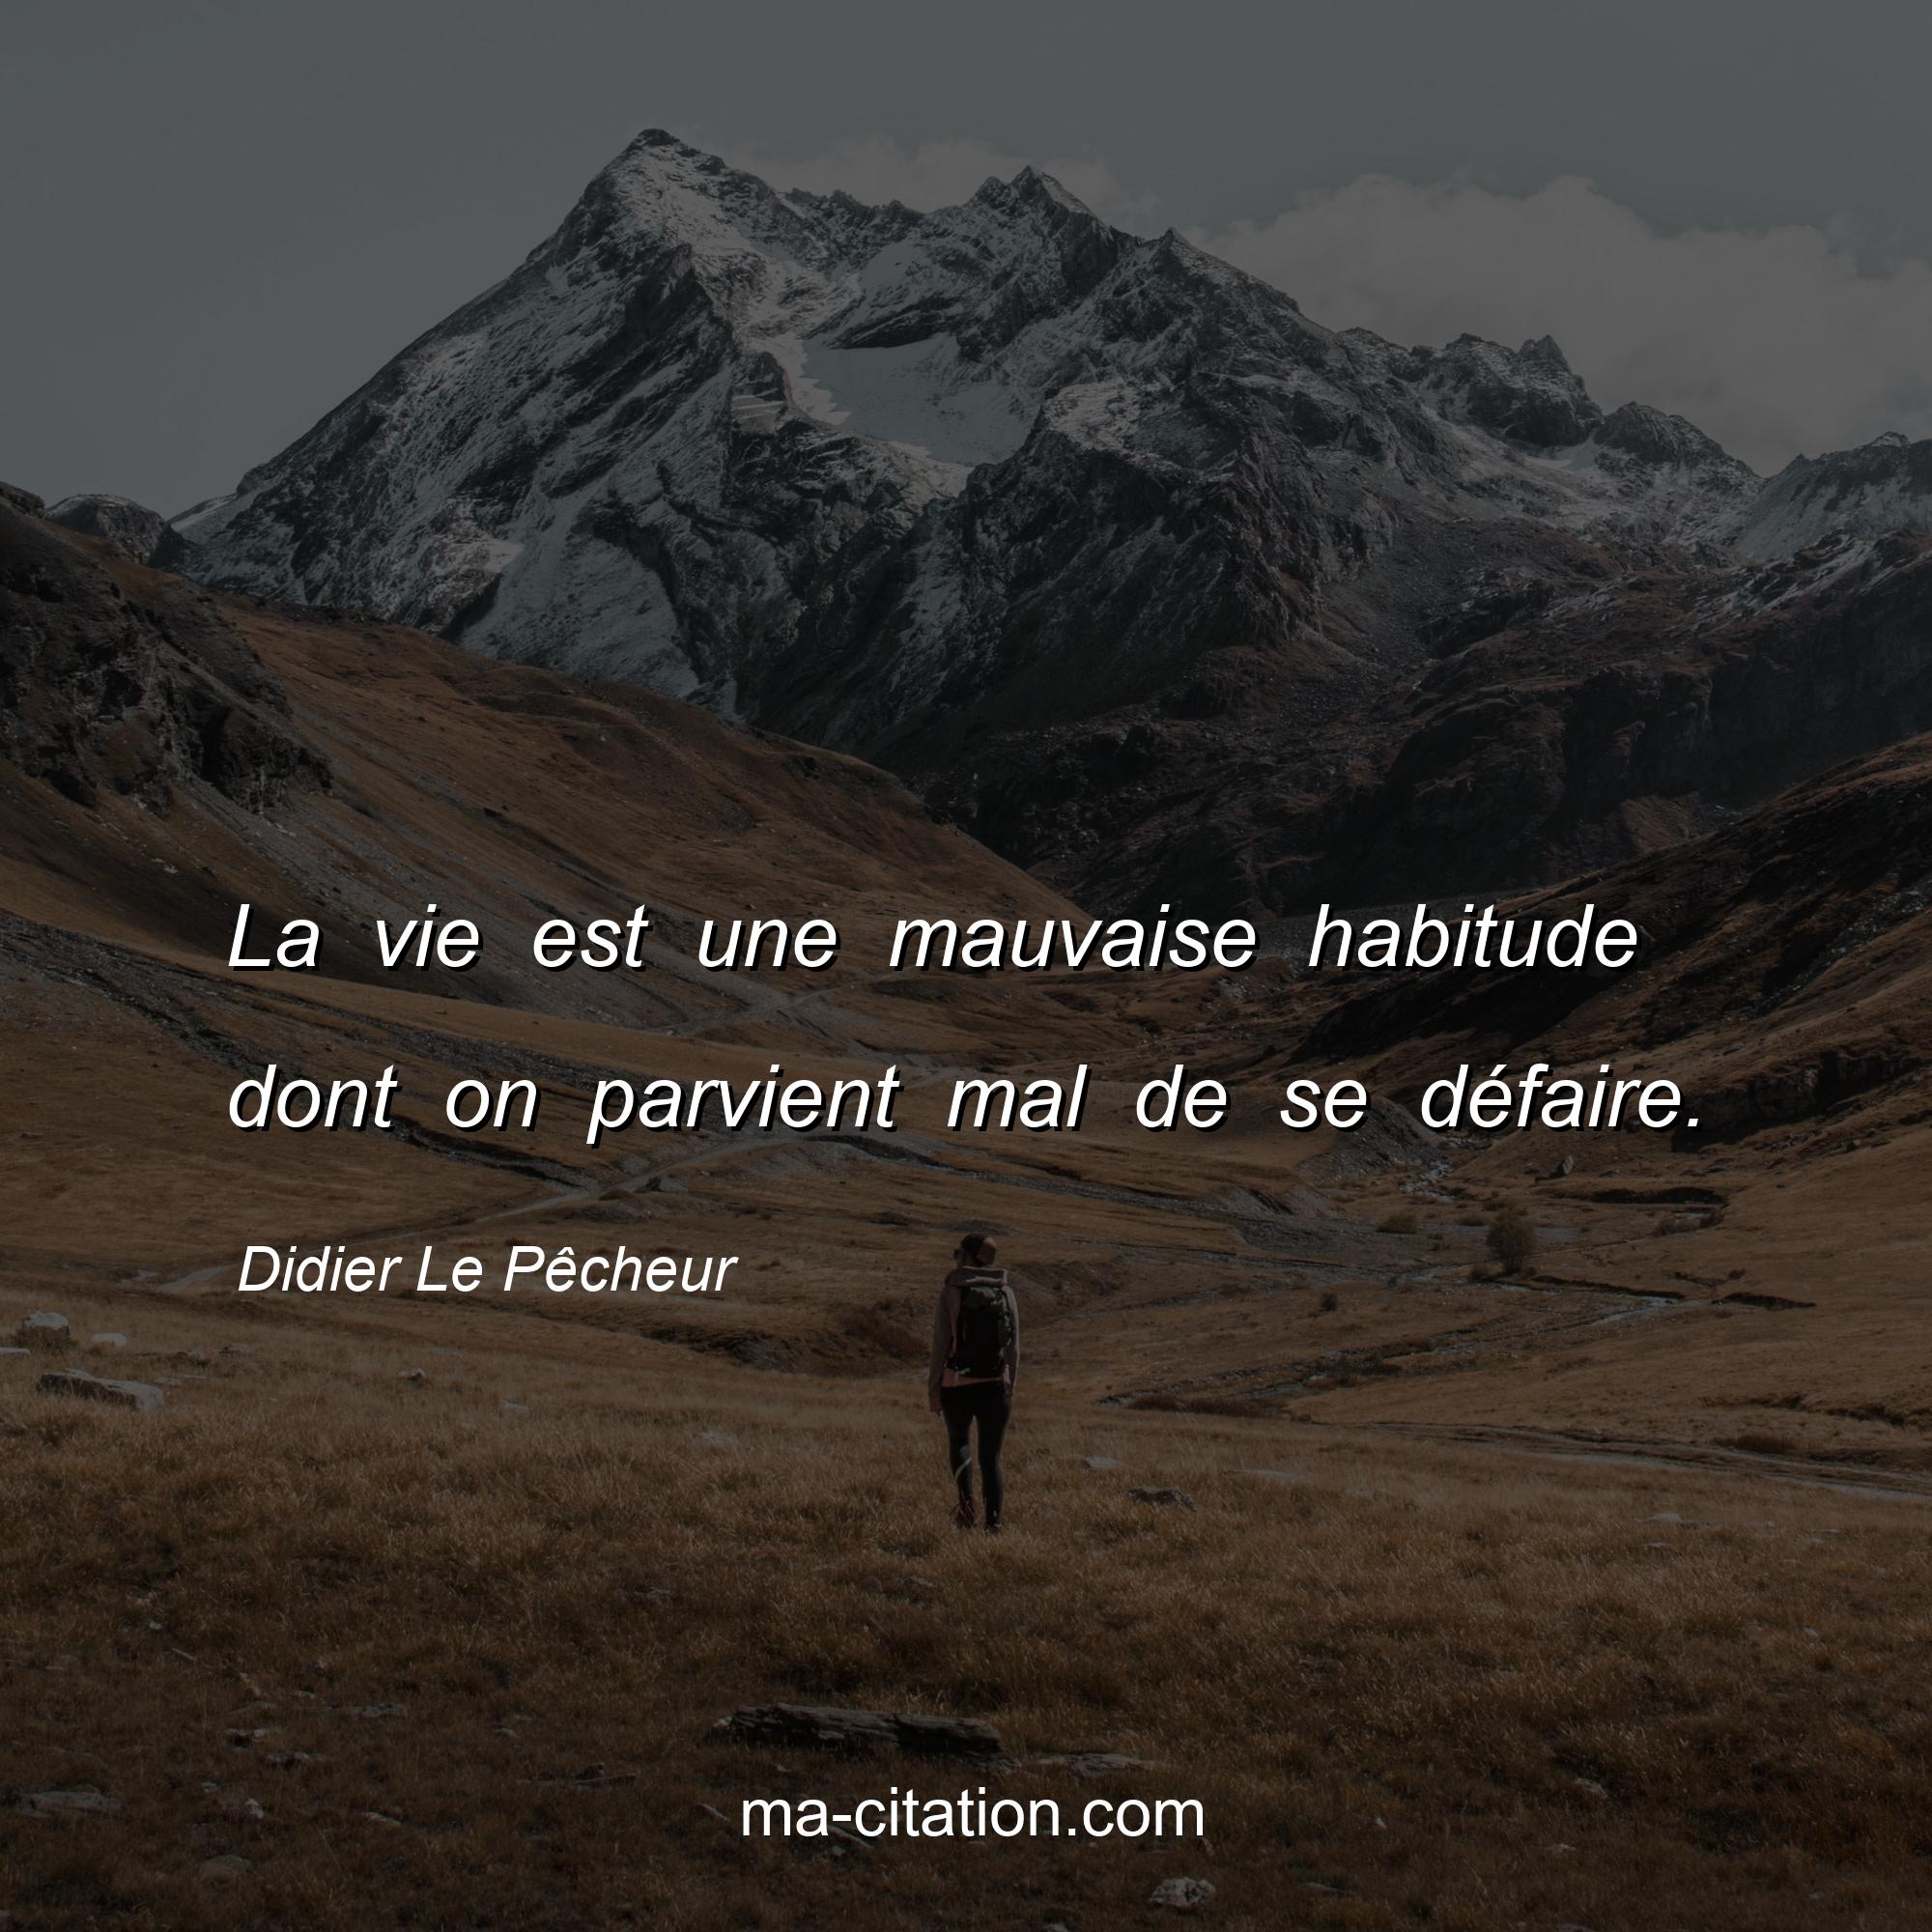 Didier Le Pêcheur : La vie est une mauvaise habitude dont on parvient mal de se défaire.